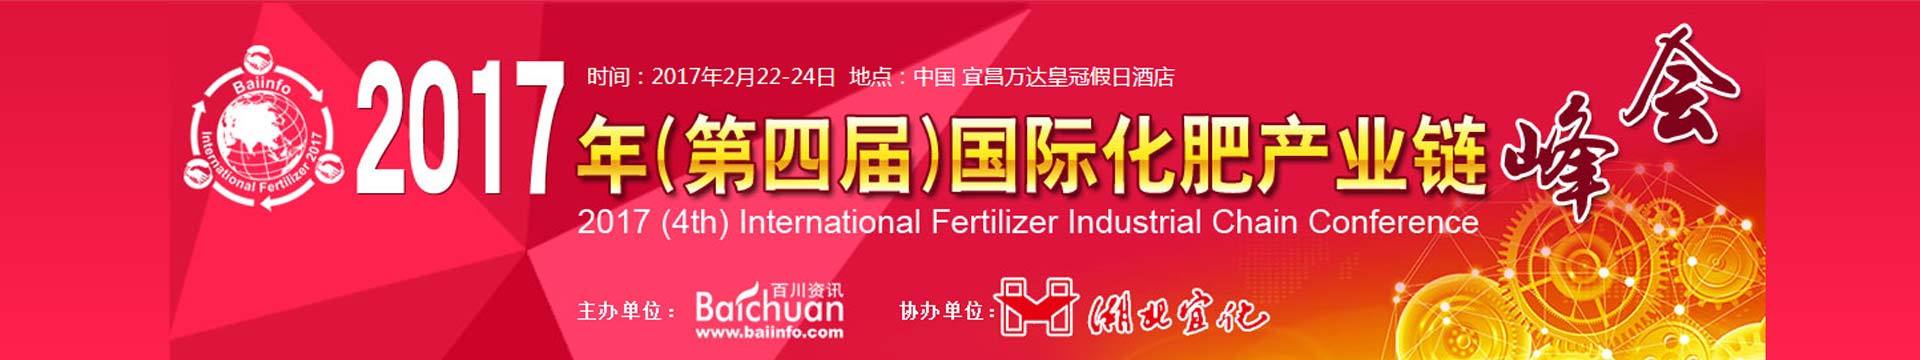 2017年(第四届)国际化肥产业链峰会